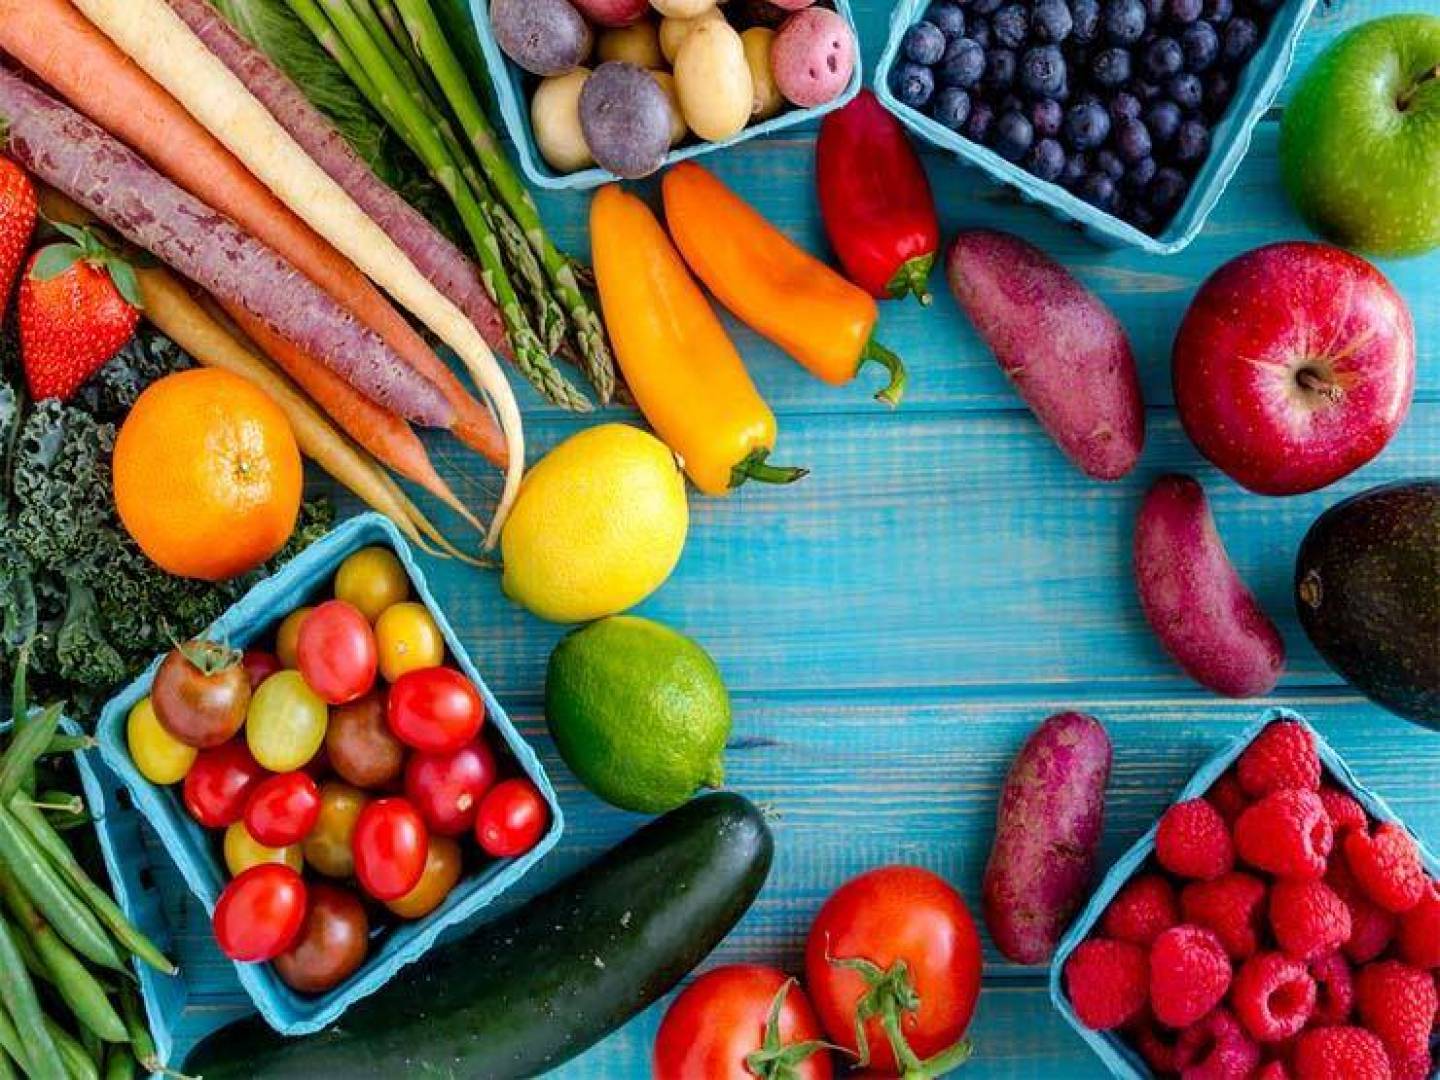 خبراء تغذية يحددون كمية الفاكهة والخضروات التي يحتاجها الجسم يوميا وطريقة تناولها